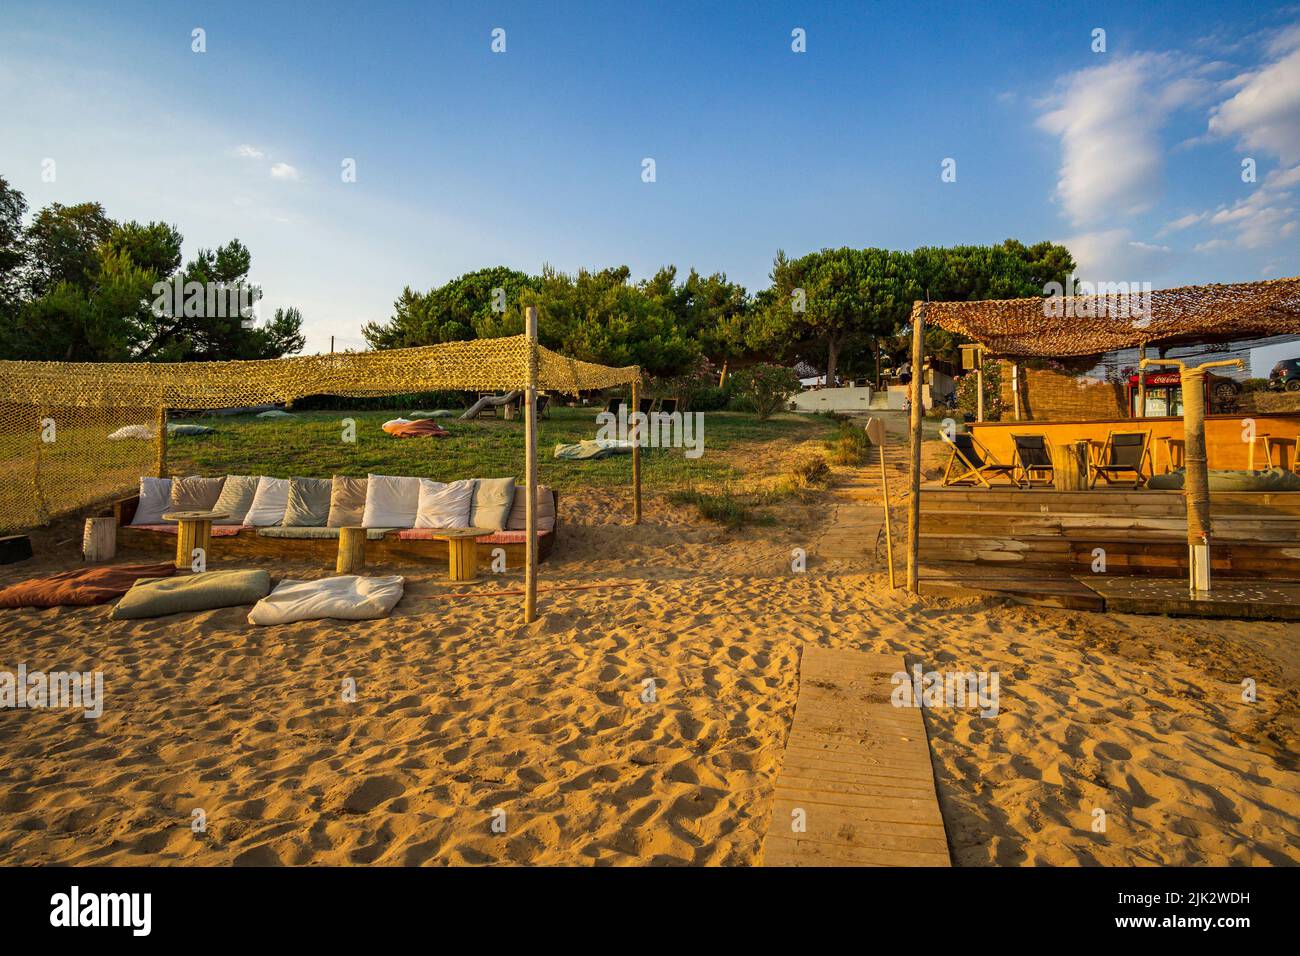 La famosa spiaggia di Romanos si trova vicino al villaggio costiero di Romanos e vicino al famoso Luxury Resort Costa Navarino, una delle principali destinazioni turistiche di Messe Foto Stock